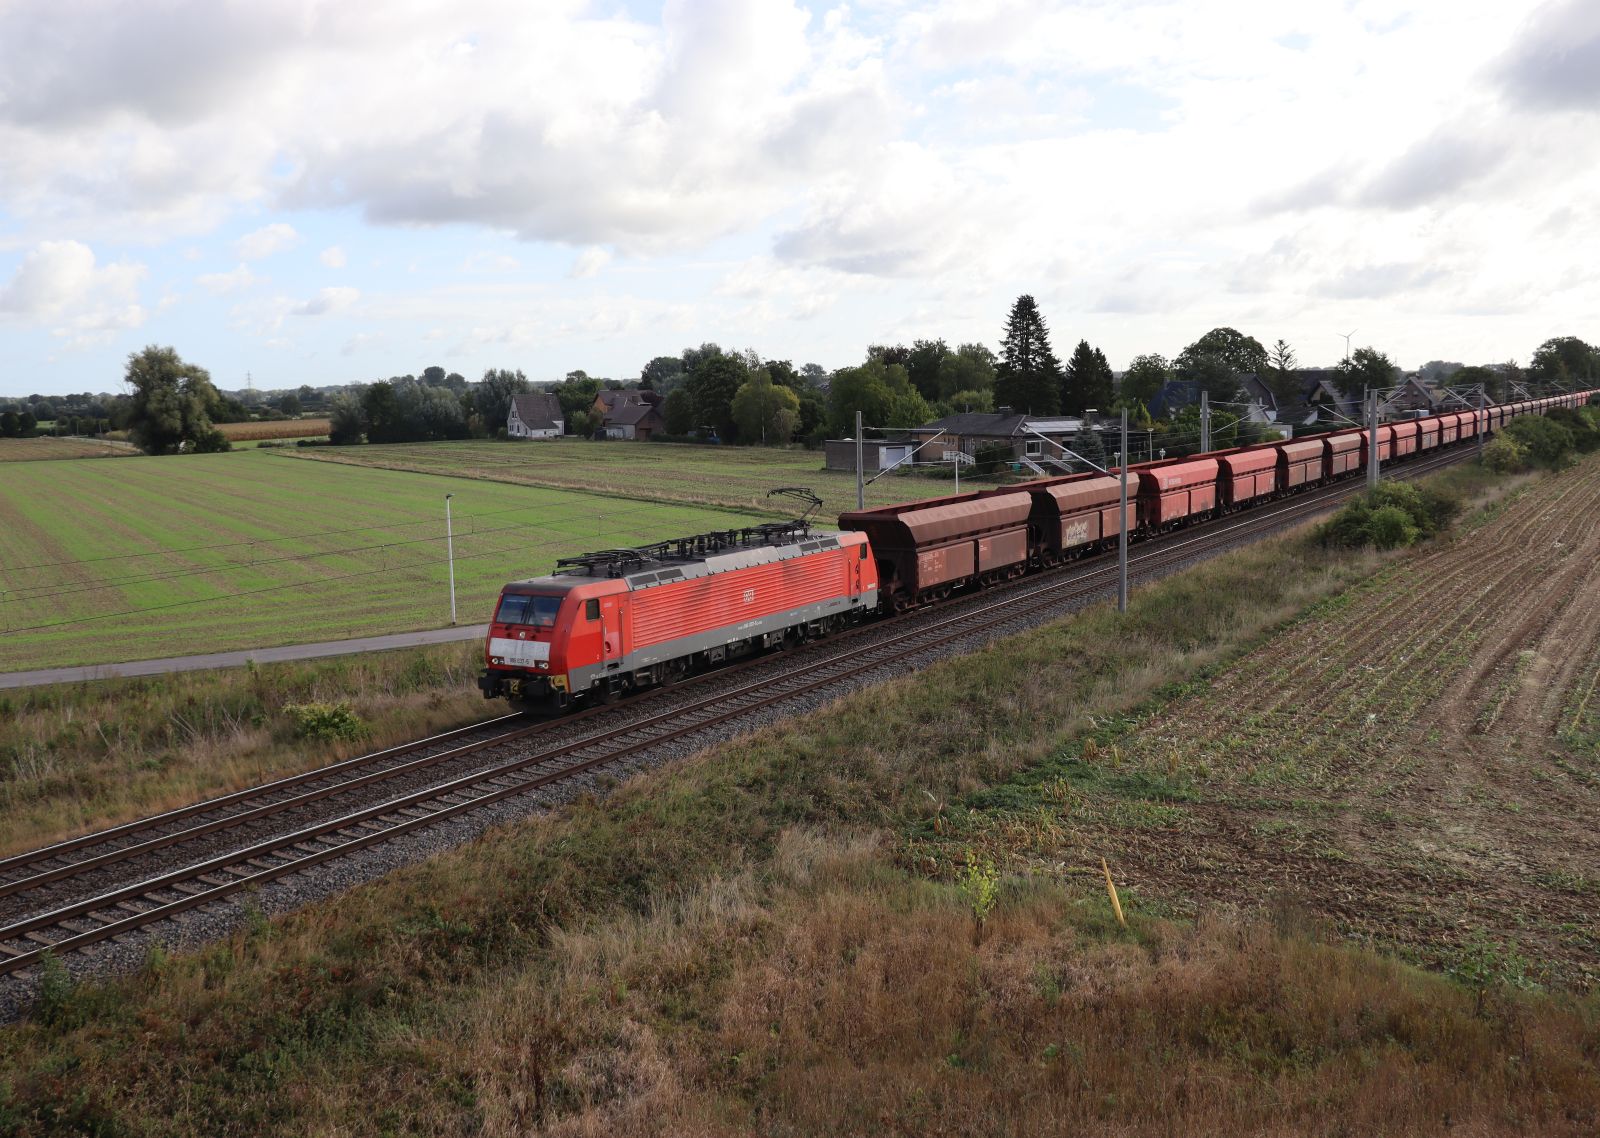 DB Cargo Lokomotive 189 037-5 Baumannstrasse, Praest bei Emmerich am Rhein 16-09-2022.

DB Cargo locomotief 189 037-5 met lege ersttrein. Baumannstrasse, Praest 16-09-2022.